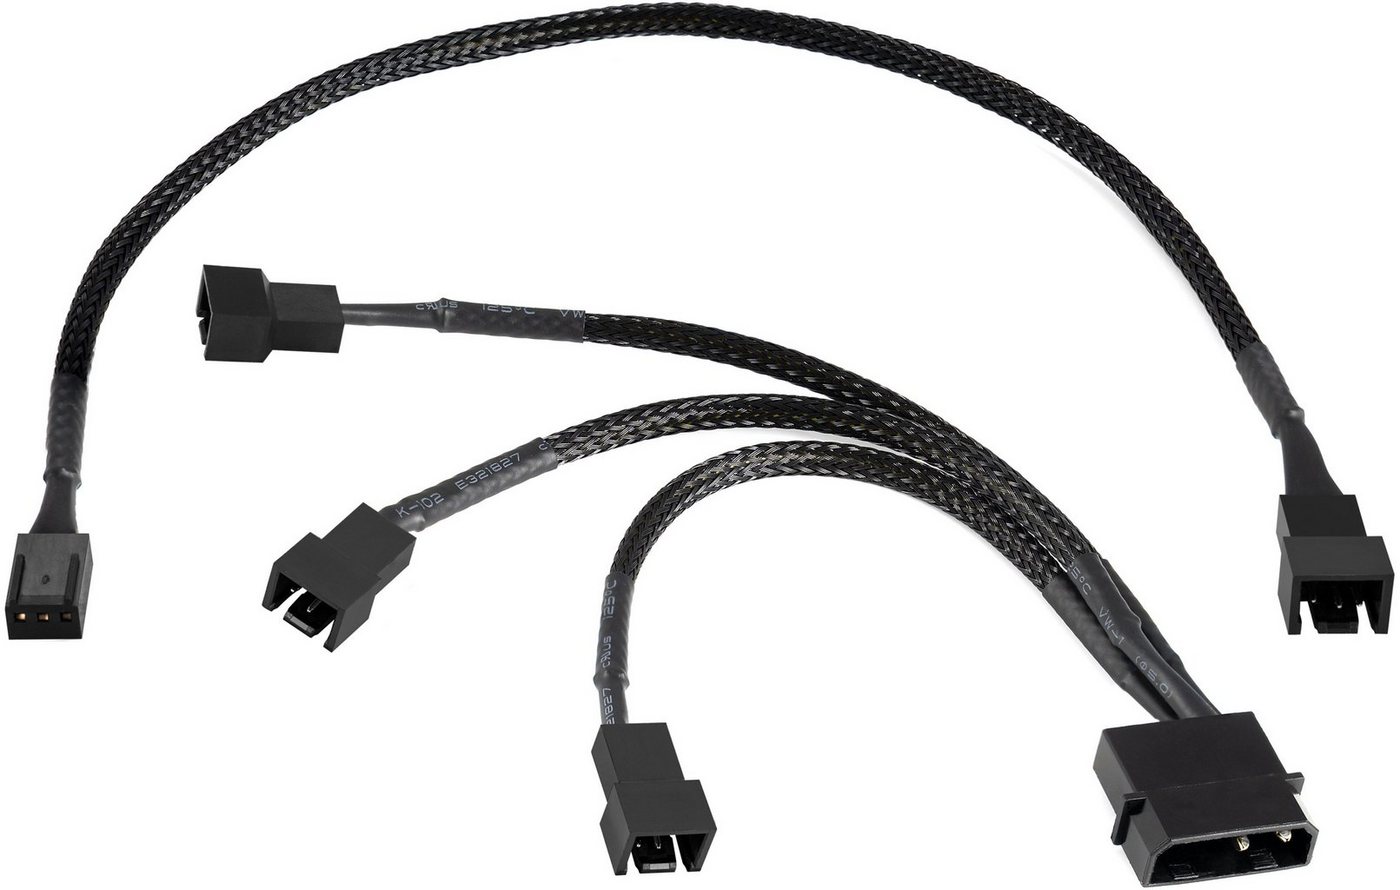 Poppstar Lüfter Kabel Set 12V Computer-Kabel, Molex, 3-pin, mit 15cm Y-Kabel + 30cm 3-Pin Verlängerungskabel für Gehäuselüfter von Poppstar